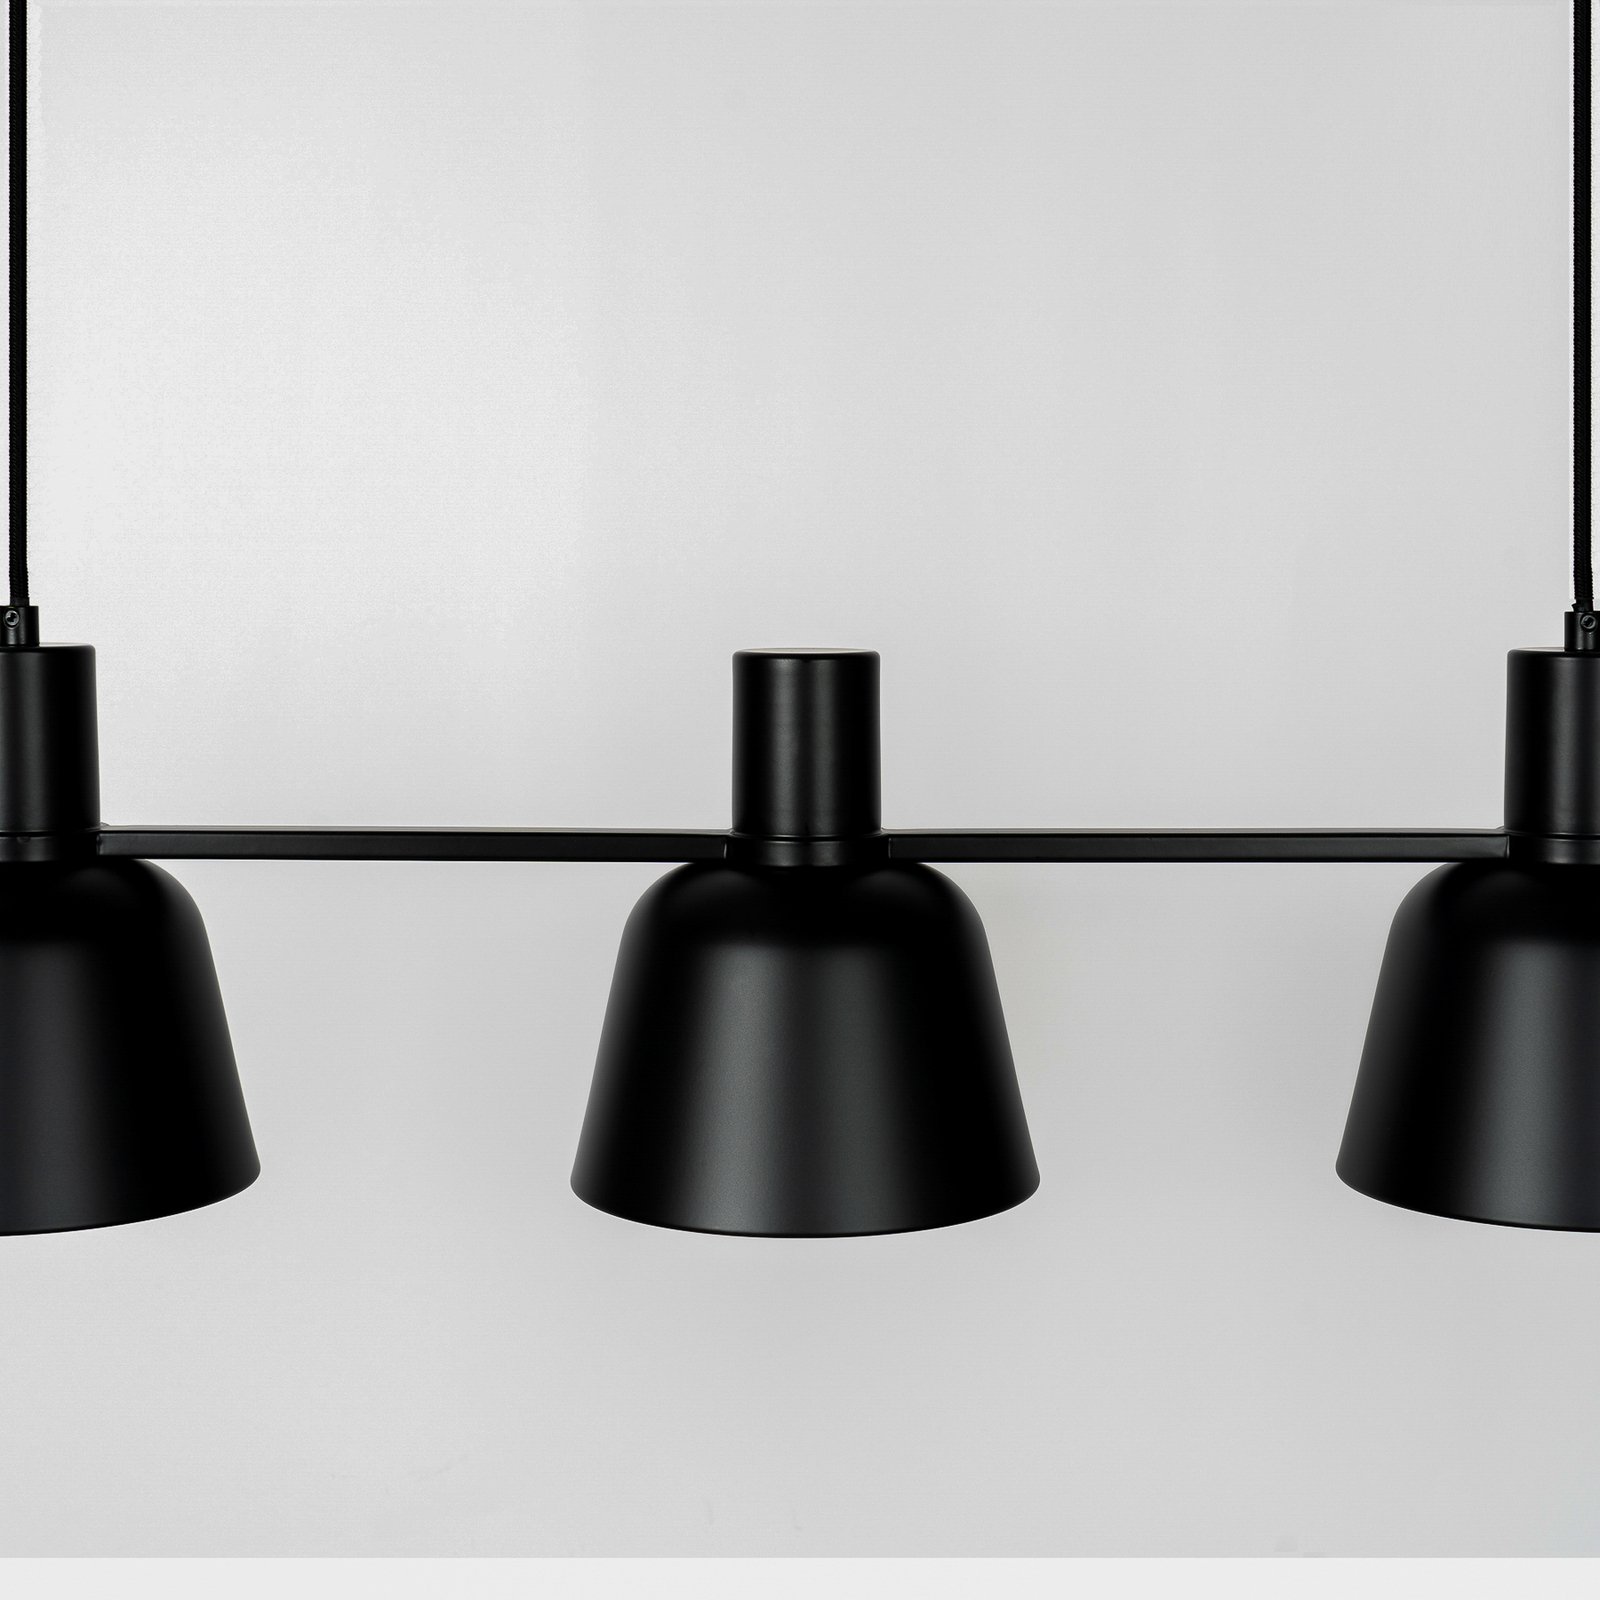 Lucande Servan lámpara colgante, negro, 3 luces